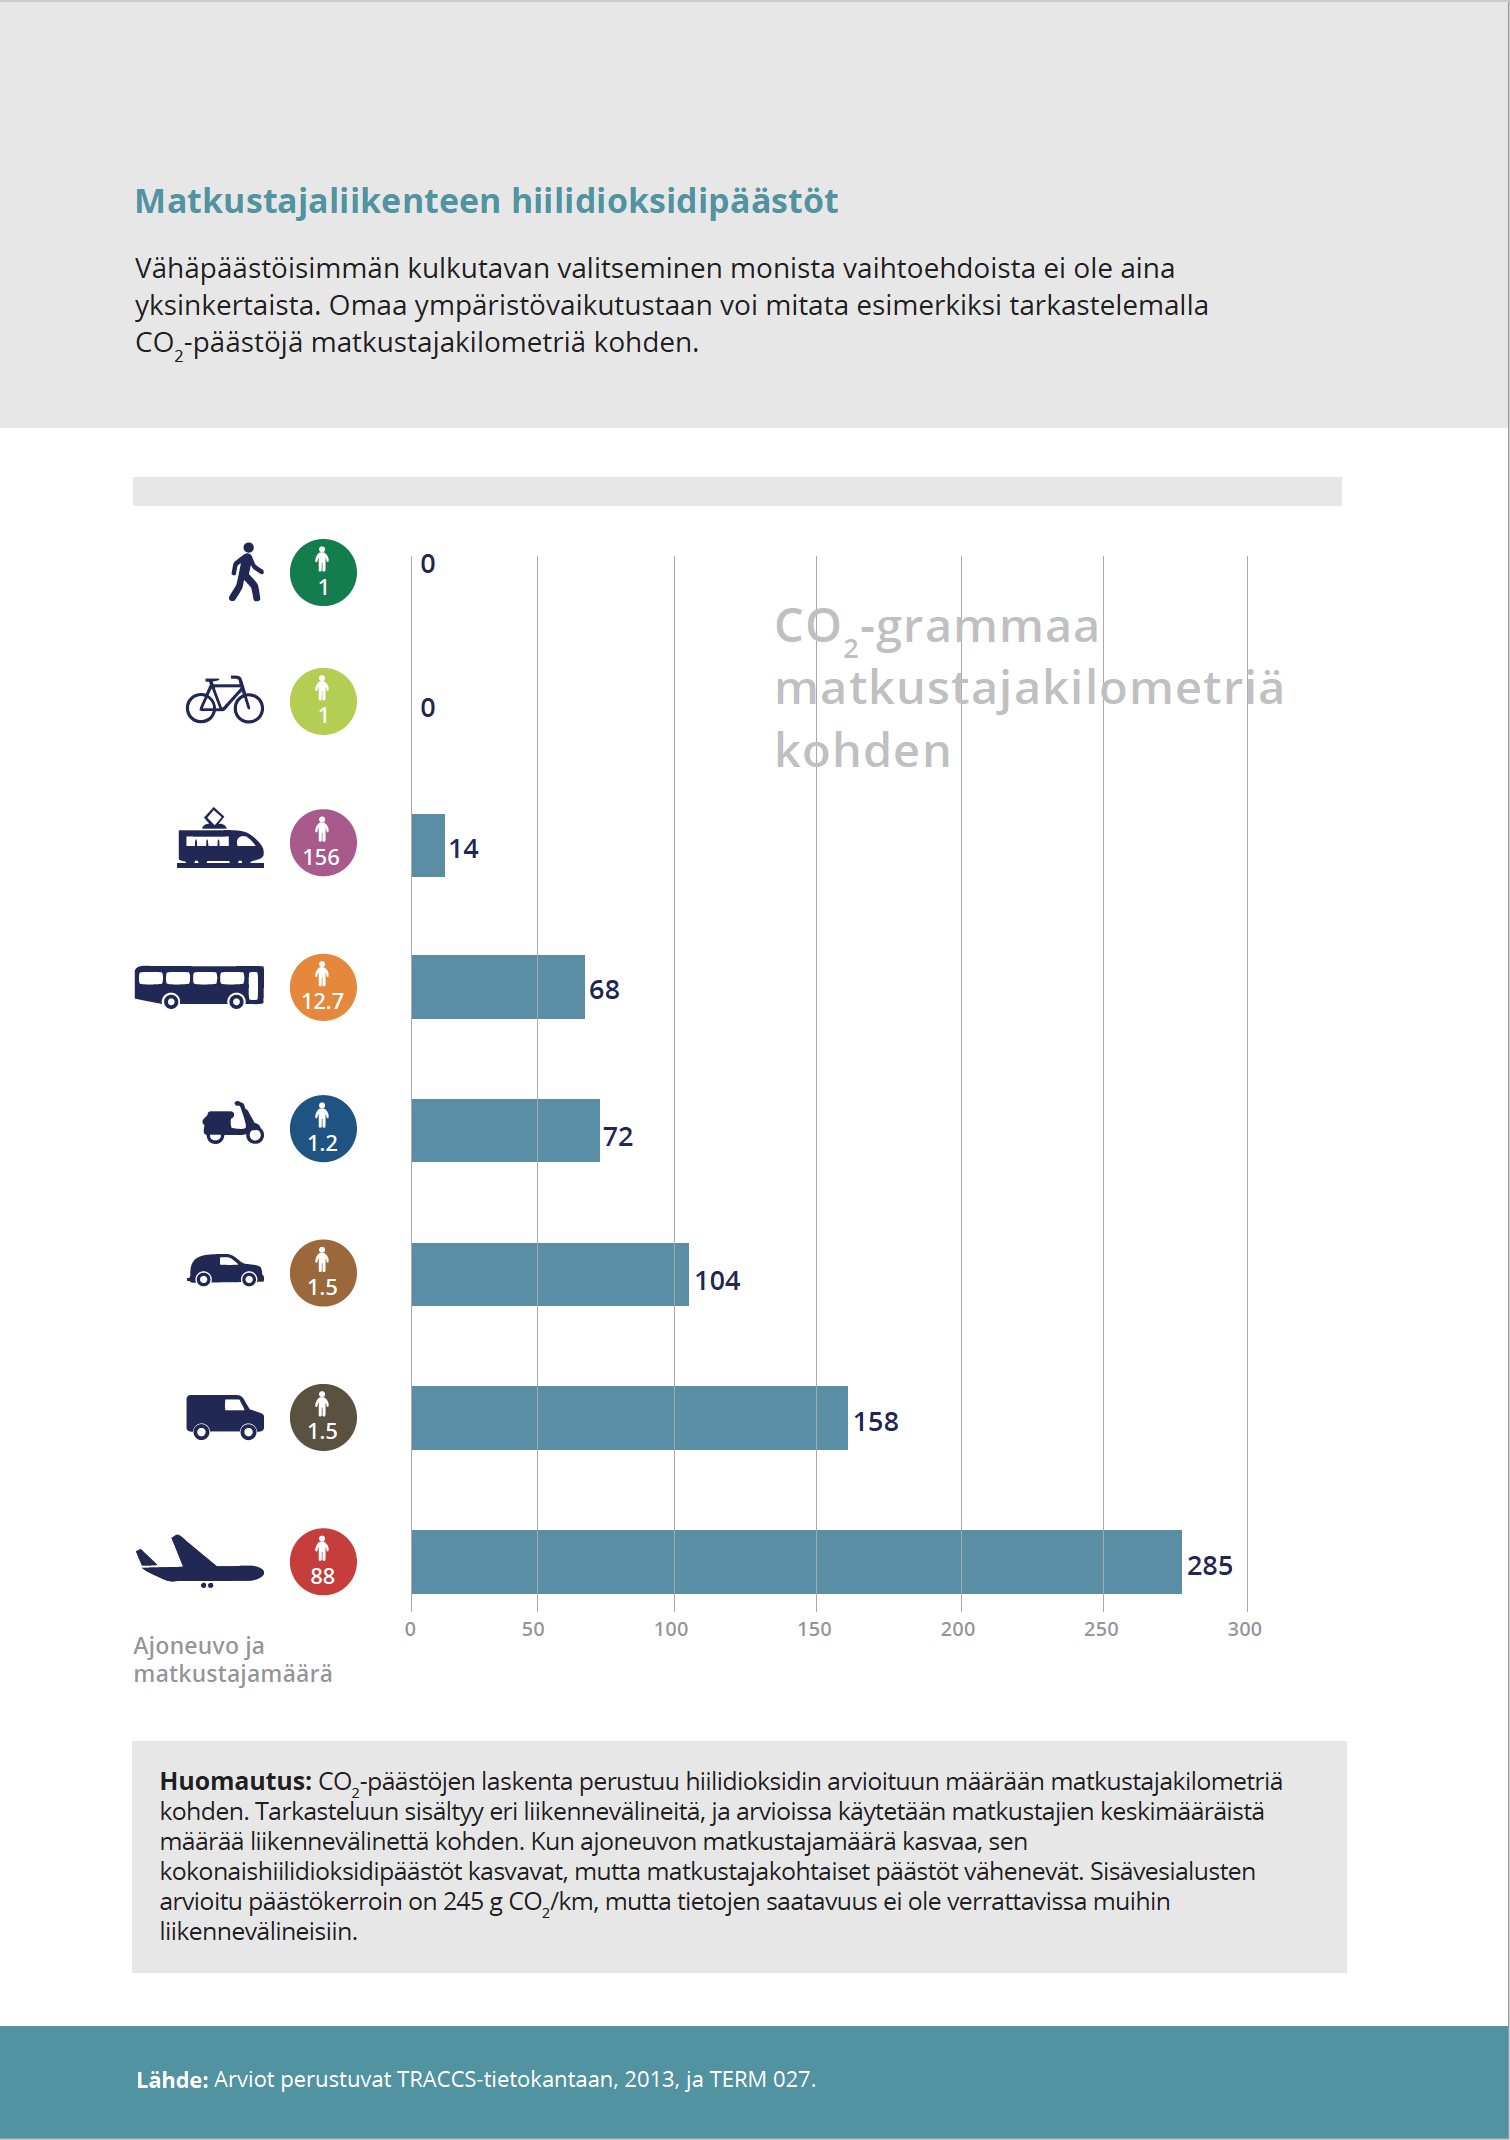 Matkustajaliikenteen hiilidioksidipäästöt